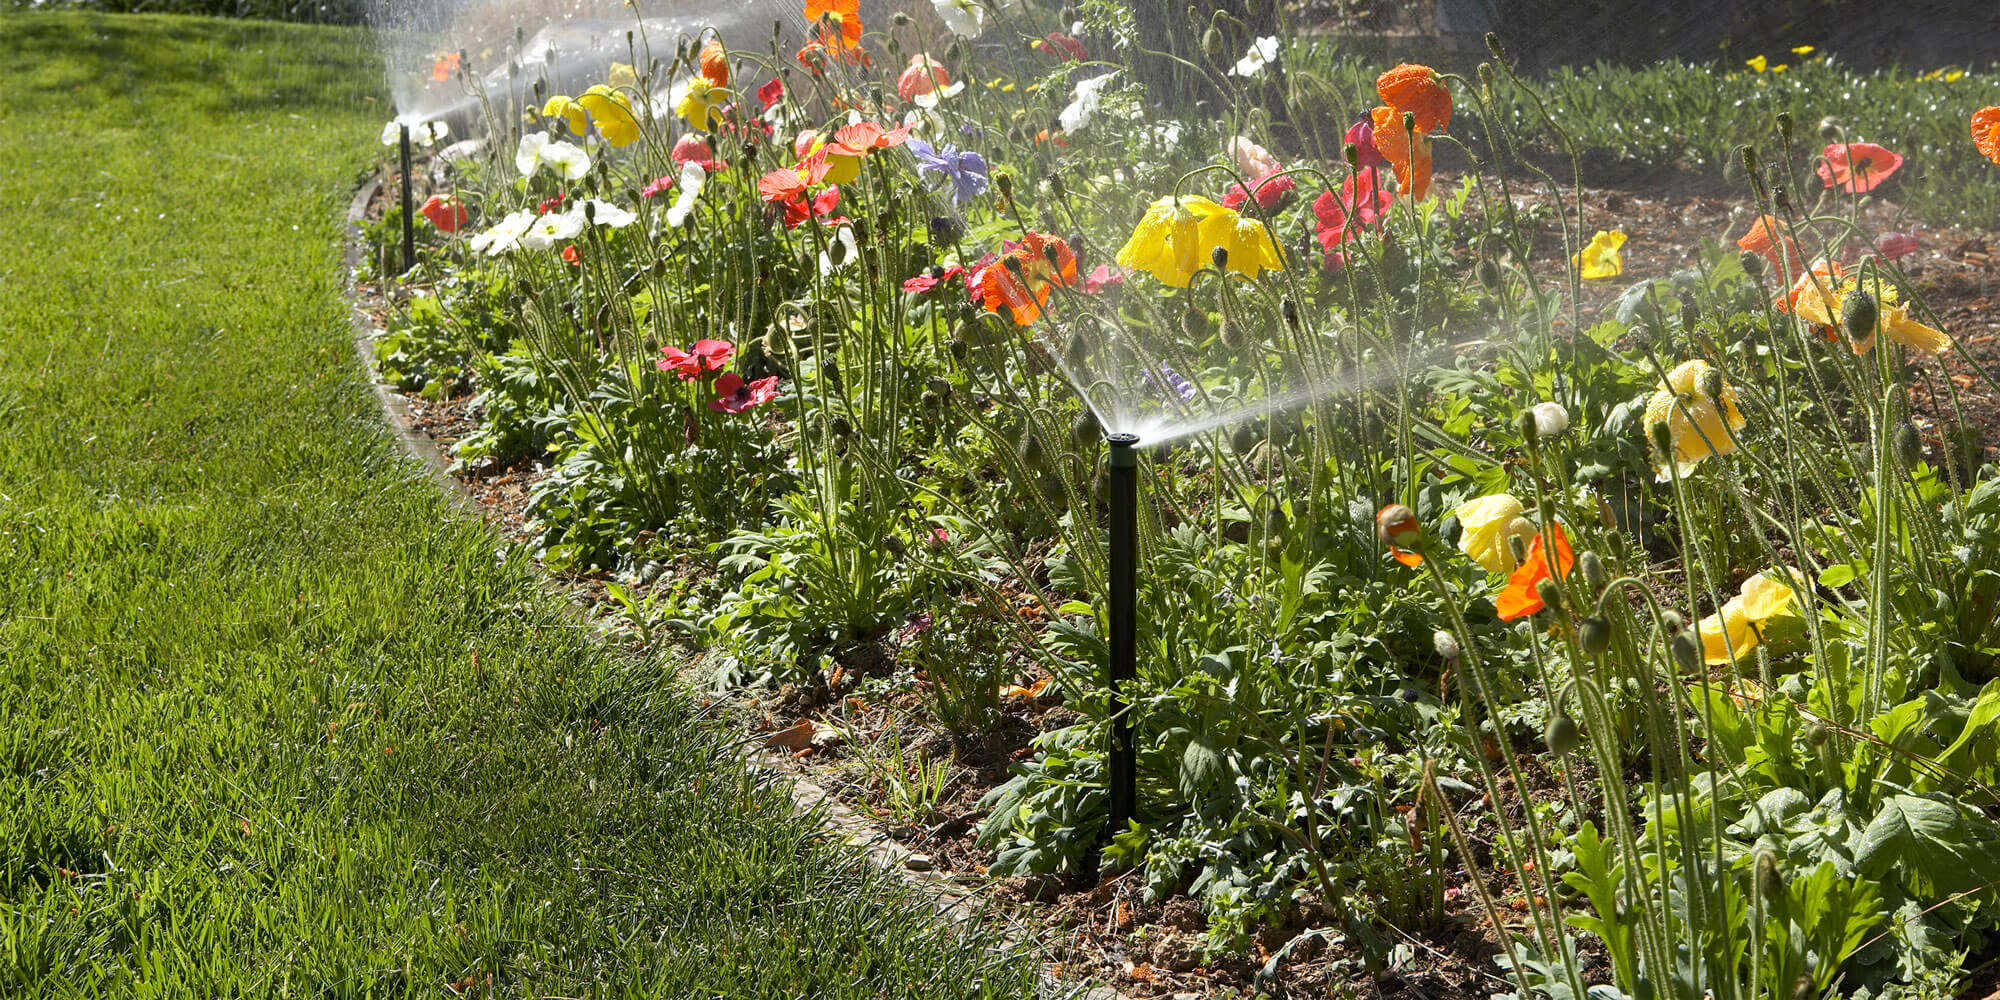 sprinklers in a flower bed